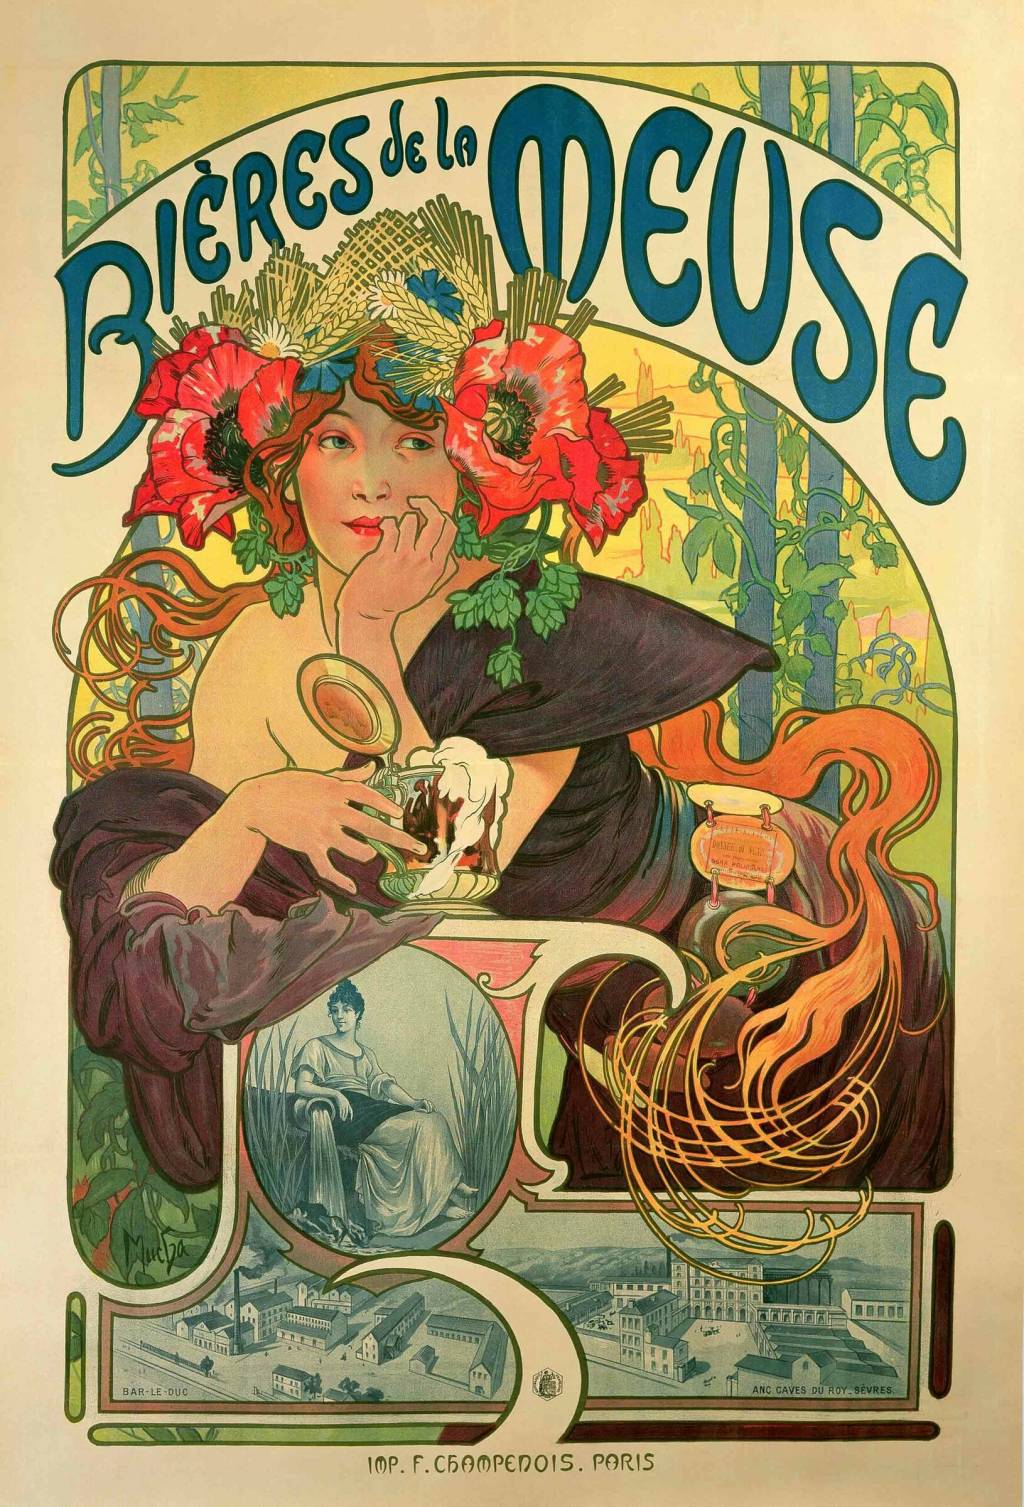 Alphonse Mucha: cartazes publicitários produzidos no fim do século XIX marcaram época